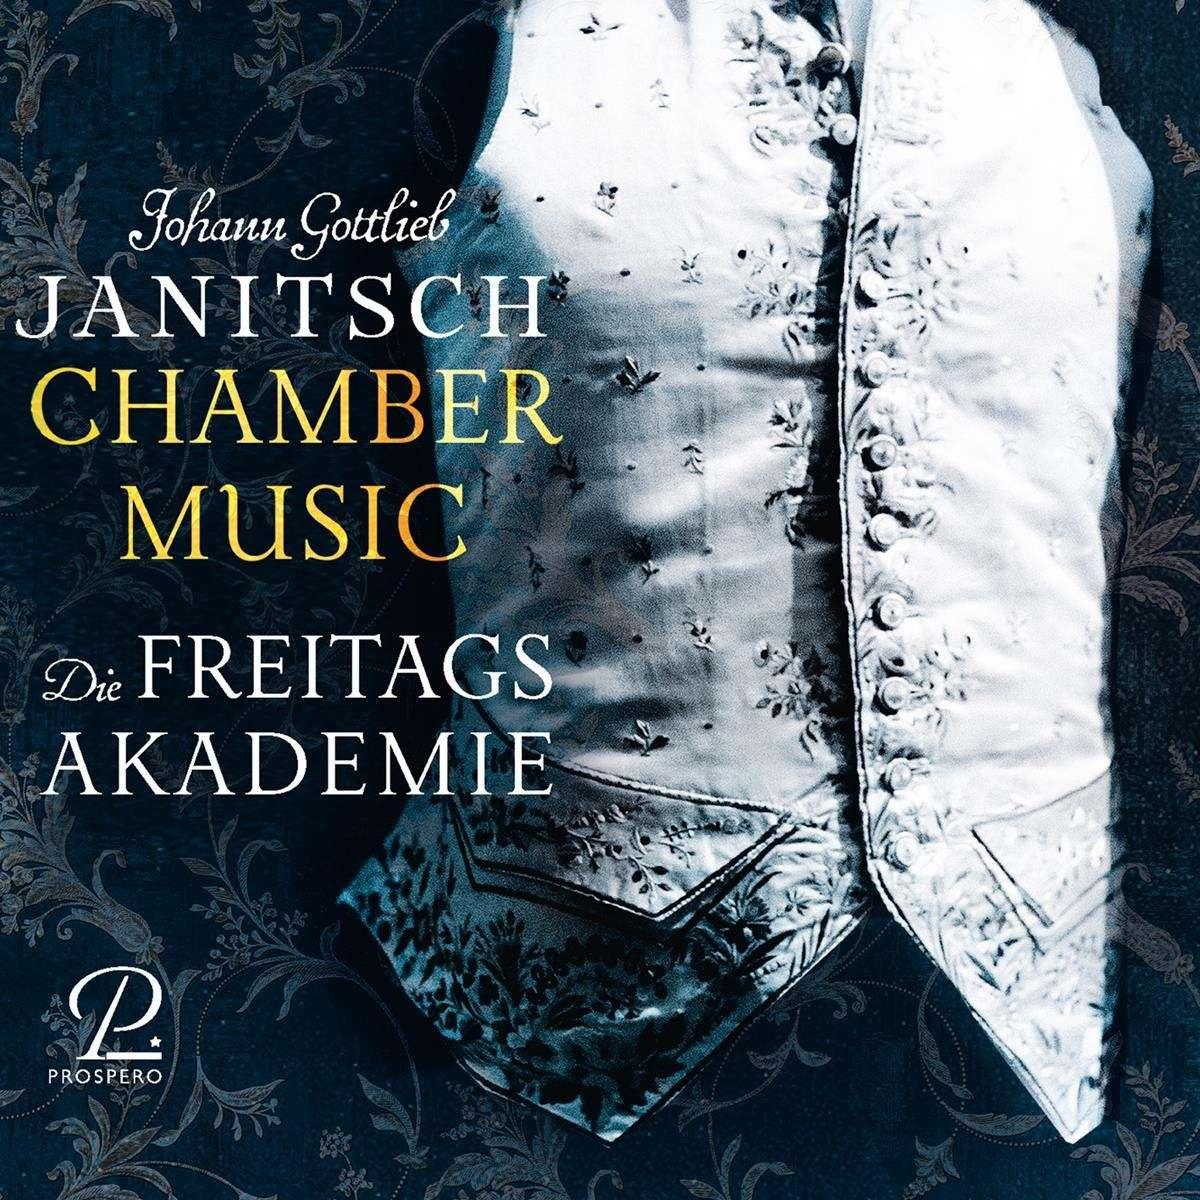 JOHANN GOTTLIEB JANITSCH: CHAMBER MUSIC